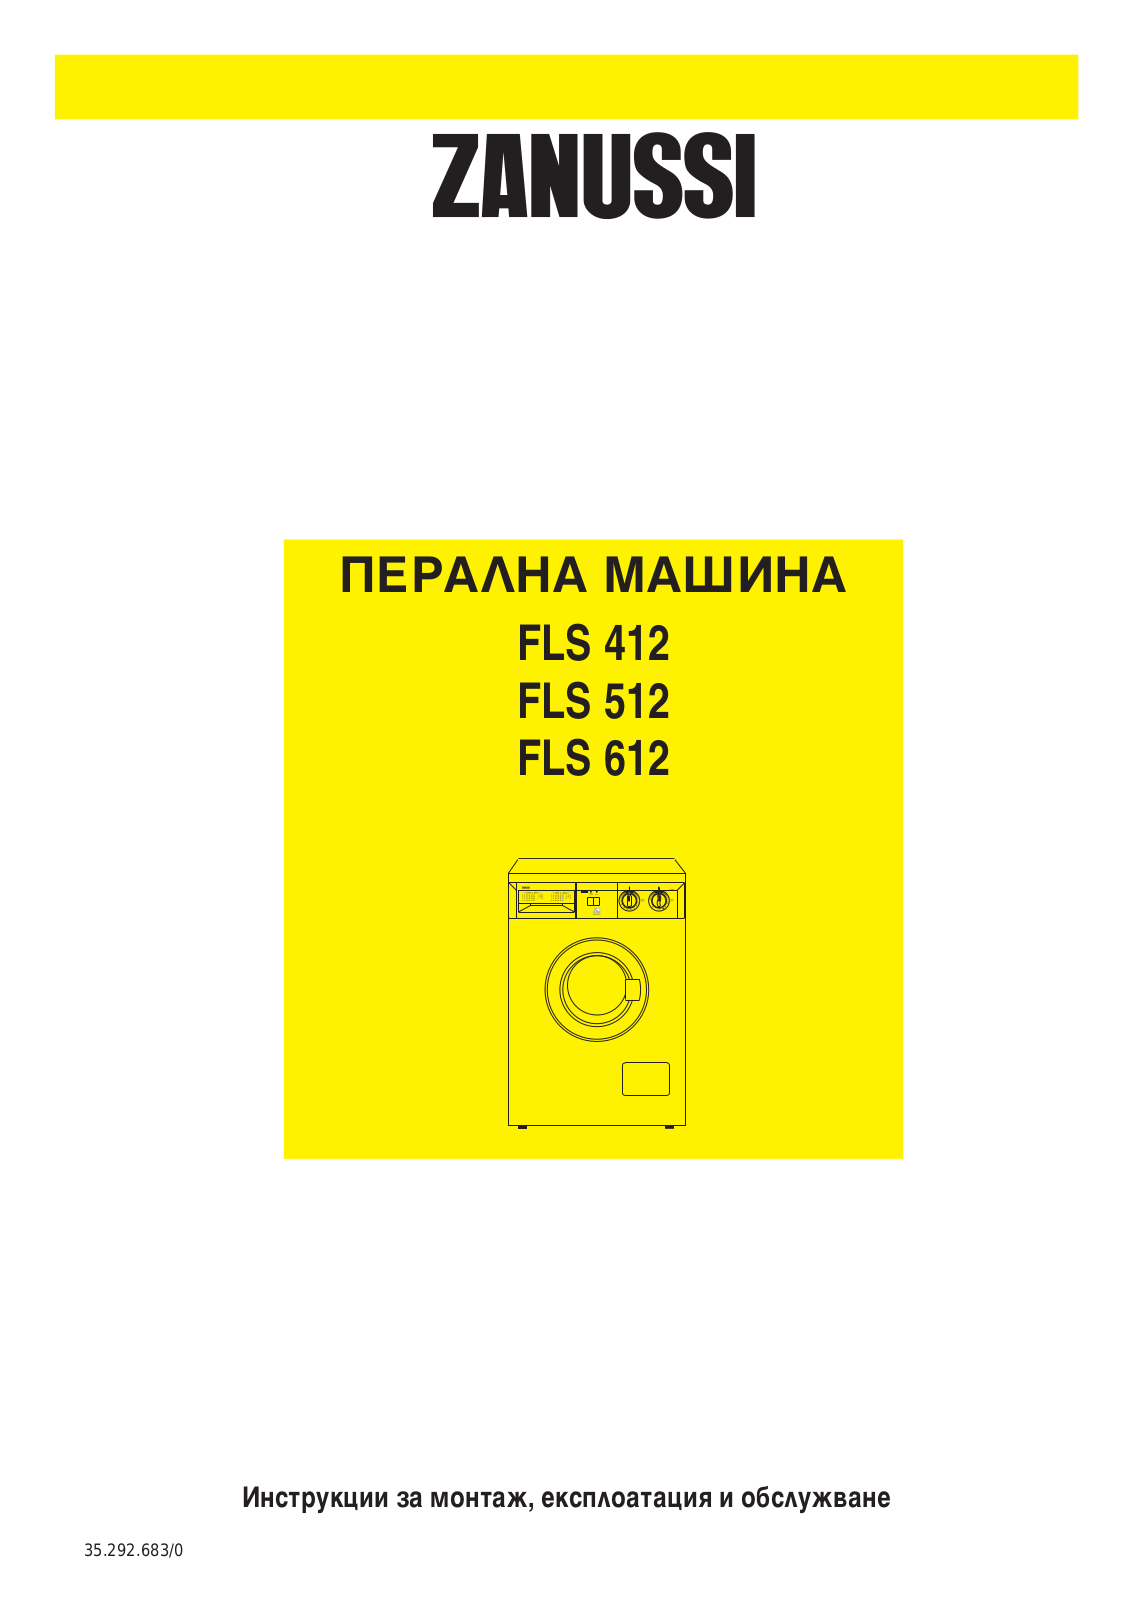 Zanussi FLS512, FLS612, FLS412 User Manual